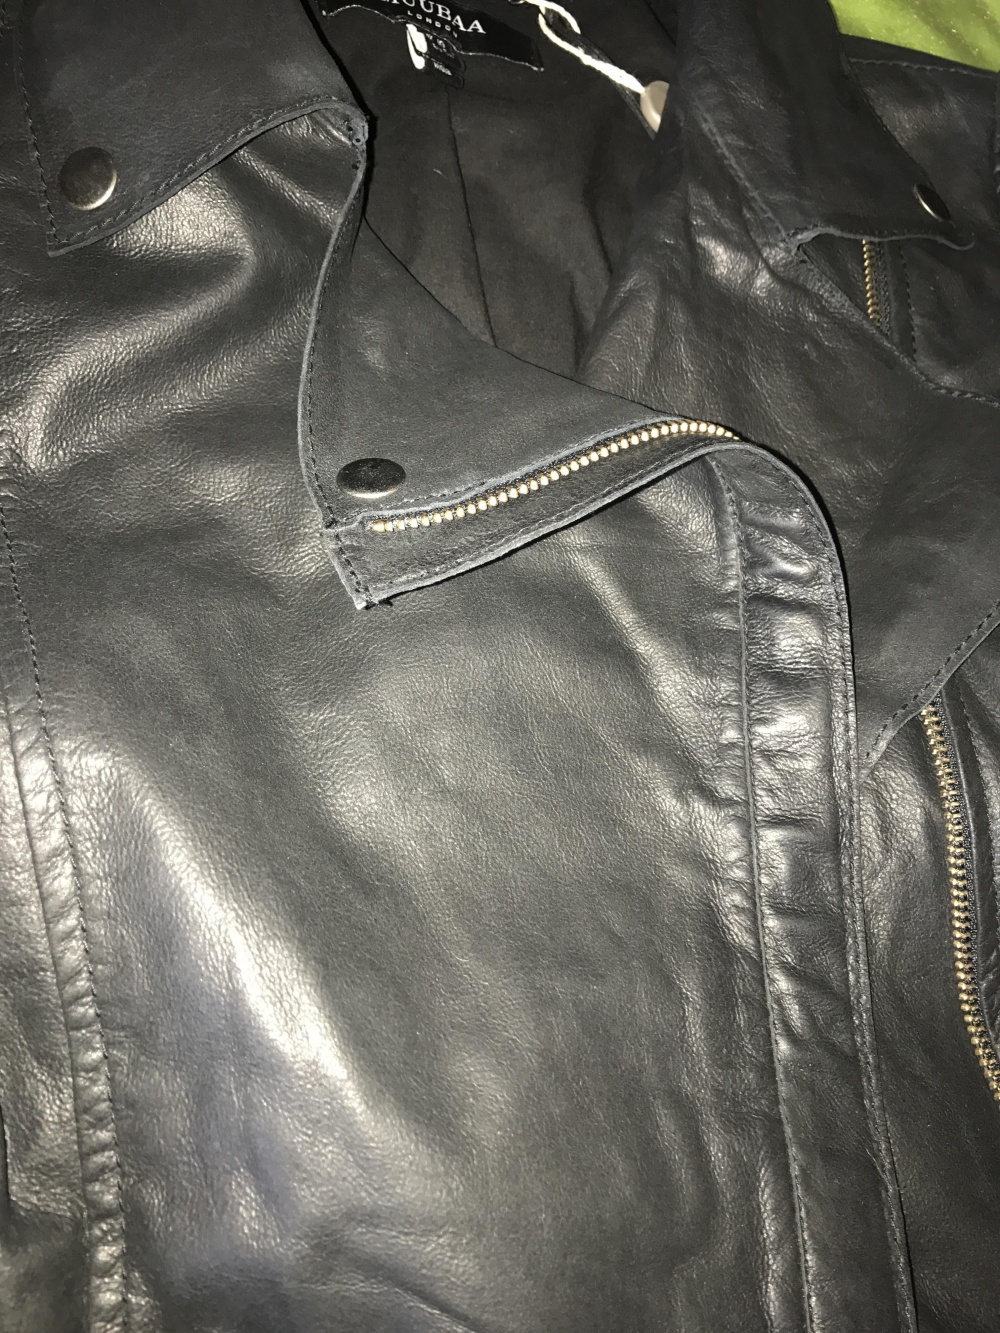 Кожаная куртка MUUBAA. Размер 44 RU/10US